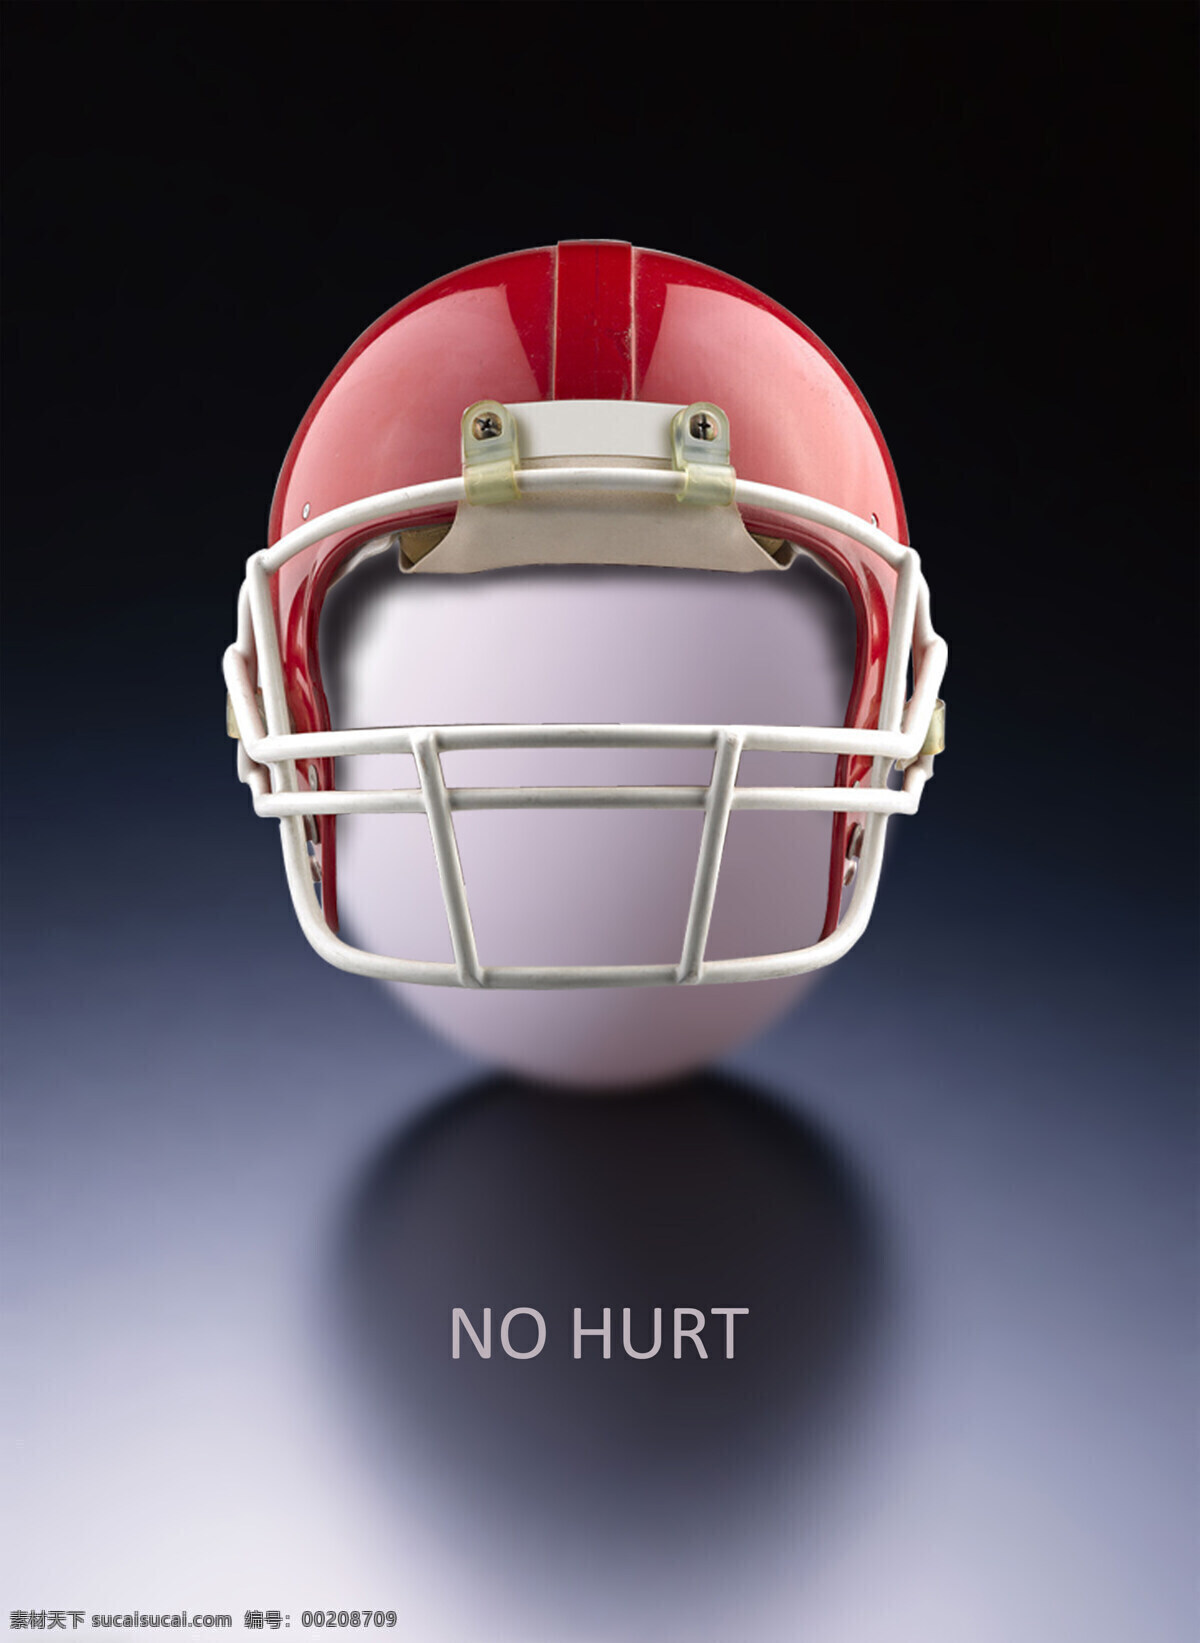 反对 家庭暴力 安全 鸡蛋 帽子 招贴设计 反对家庭暴力 橄榄球帽 海报 其他海报设计